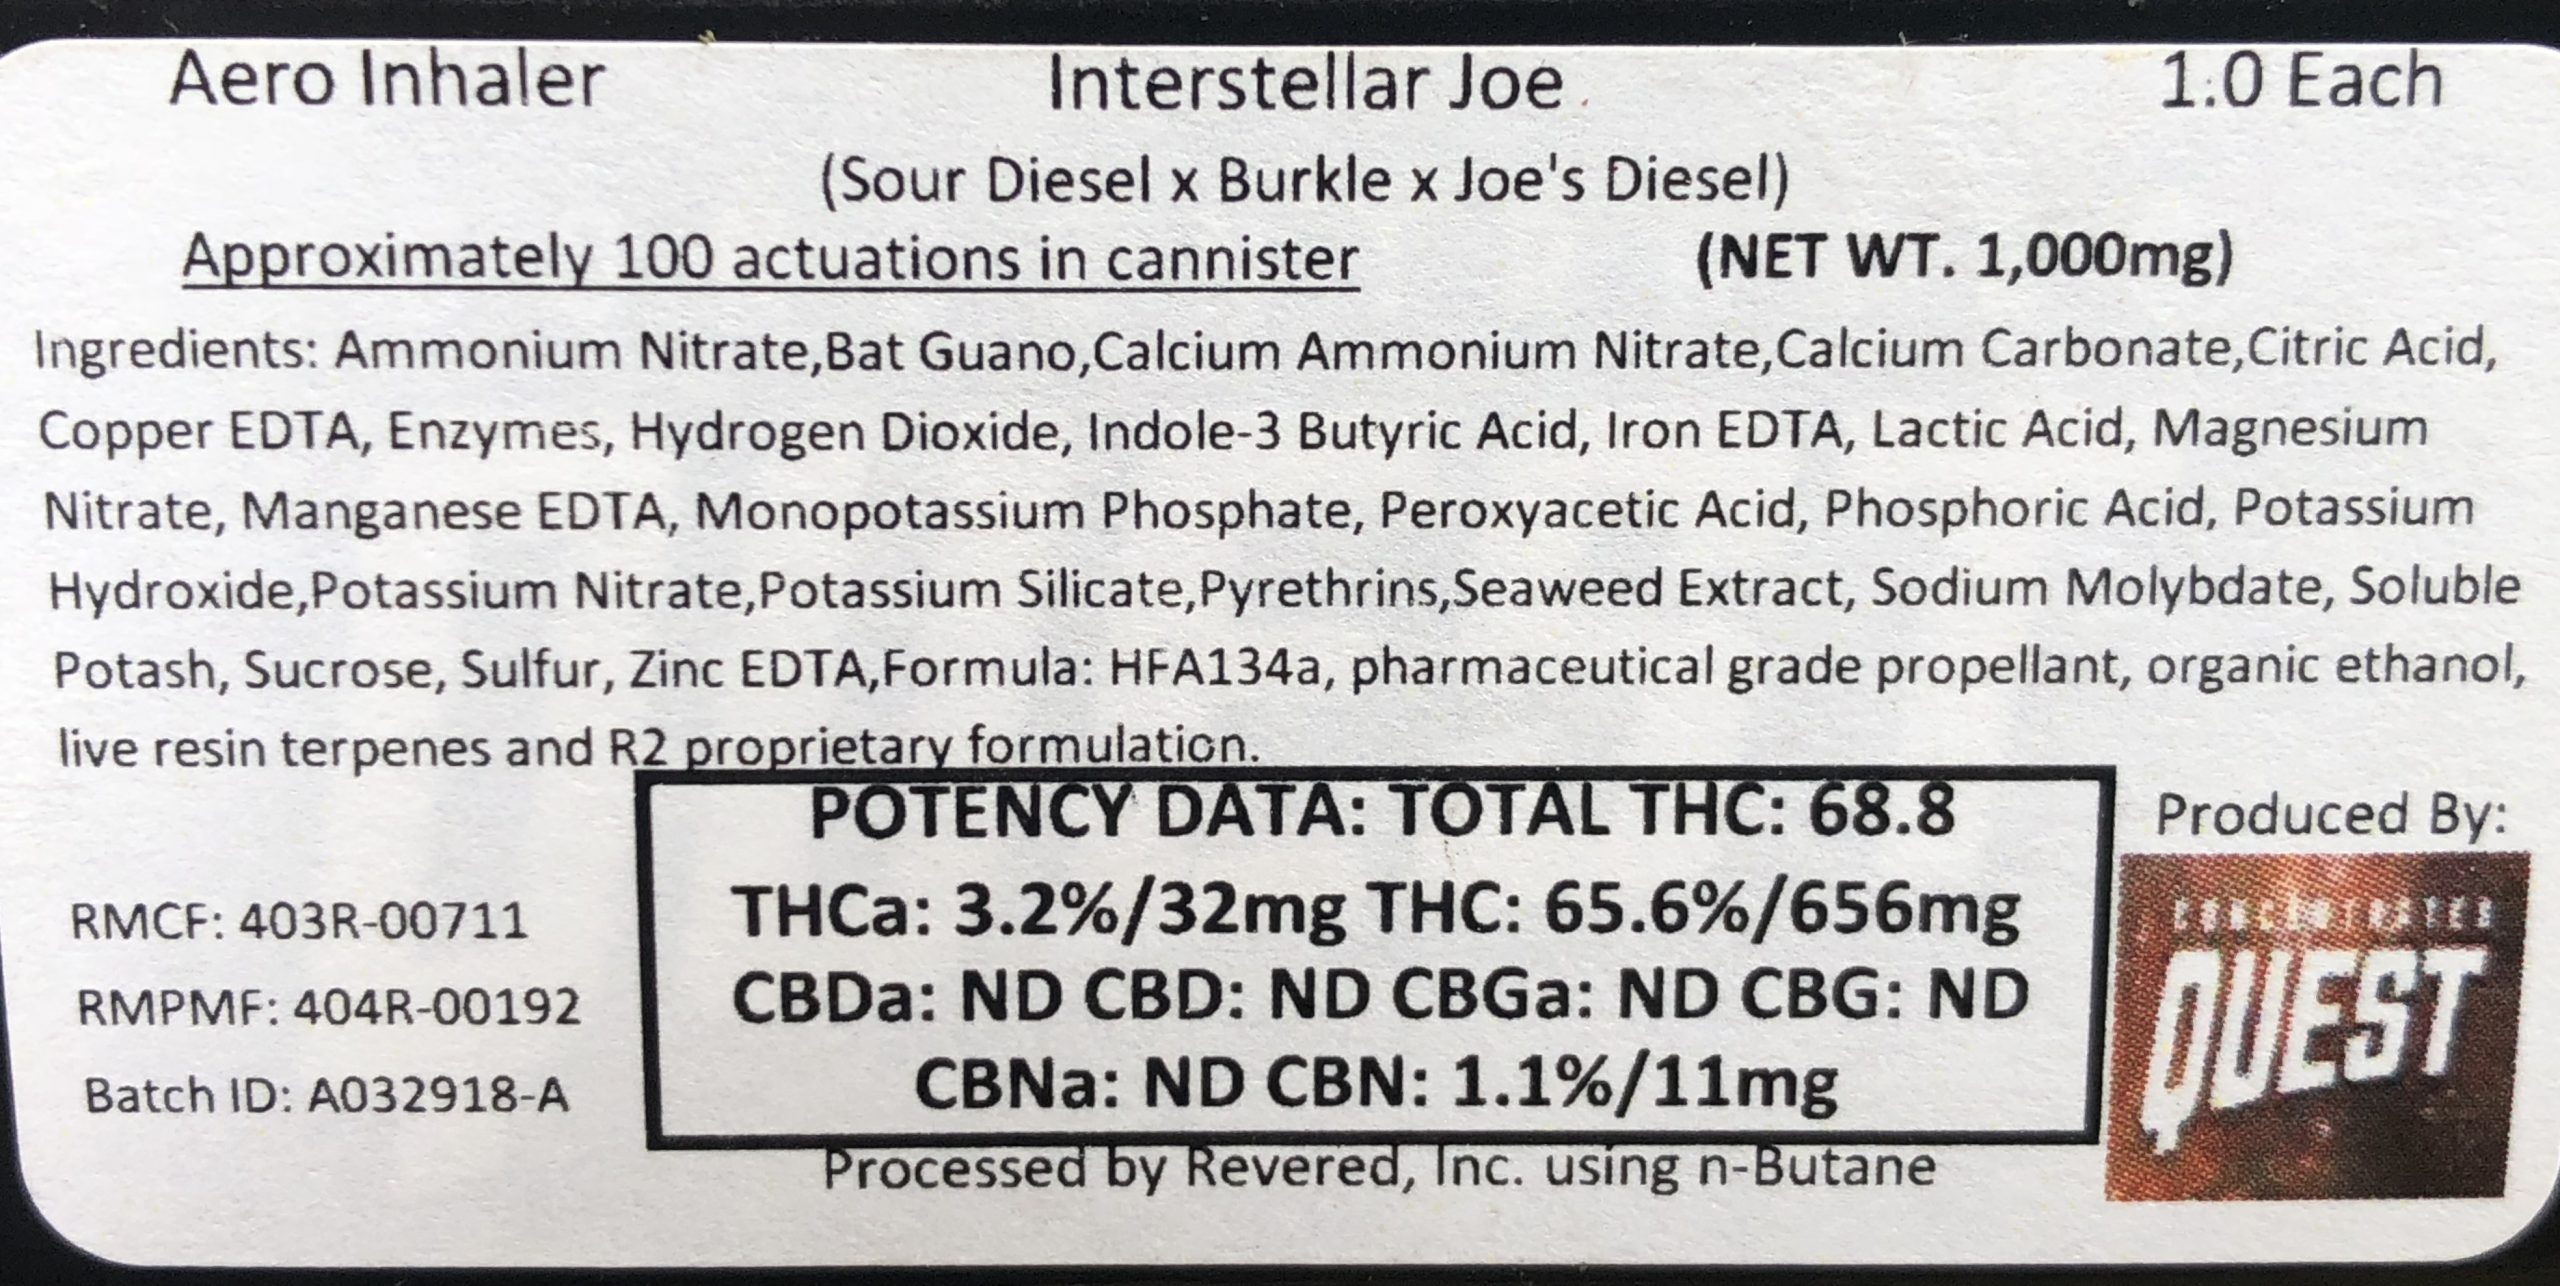 AeroInhaler Interstellar ingredients